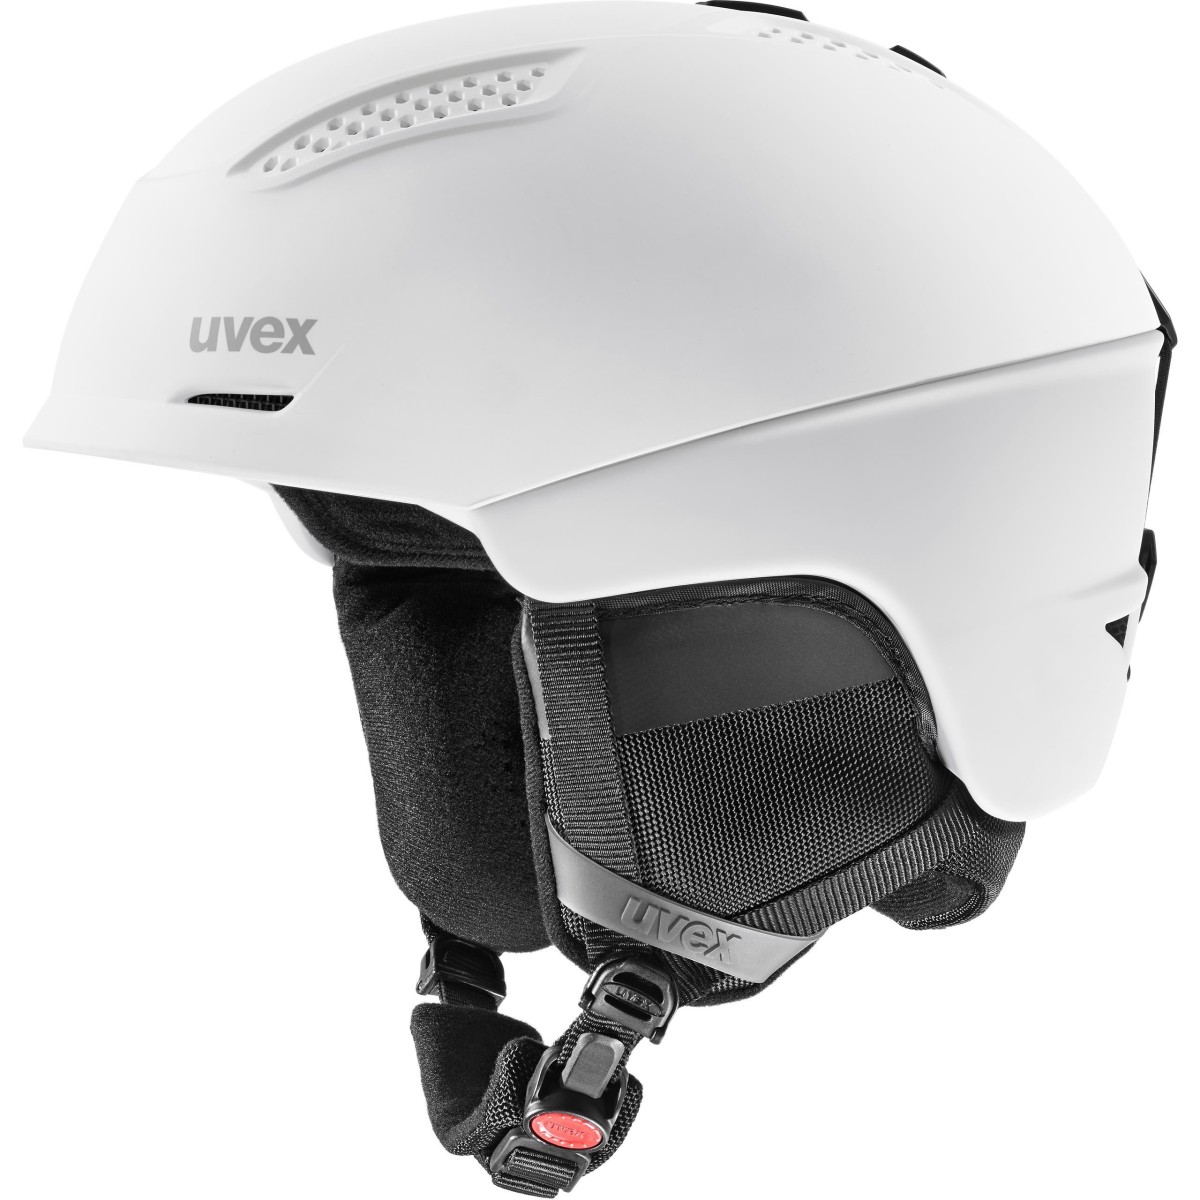 UVEX helmet ULTRA white mat